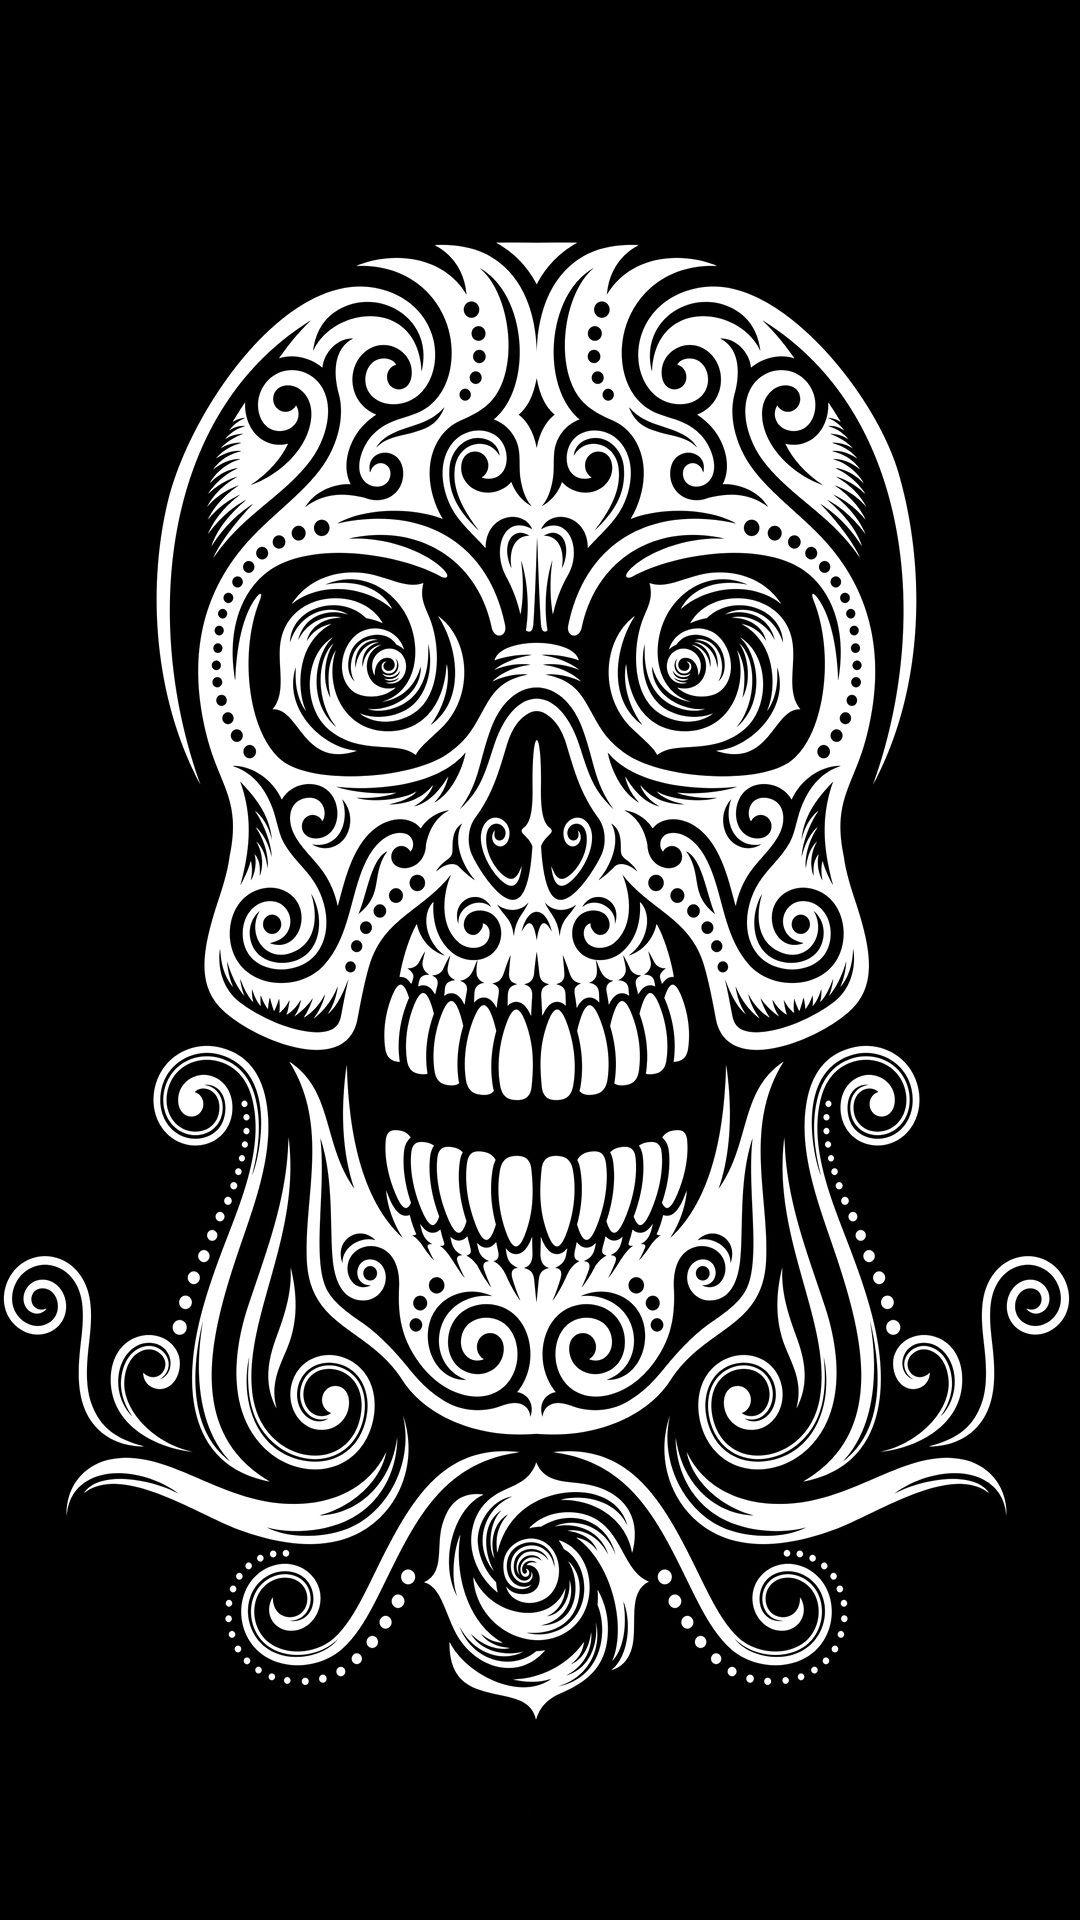 Download Tribal Skull Wallpaper free for mobile